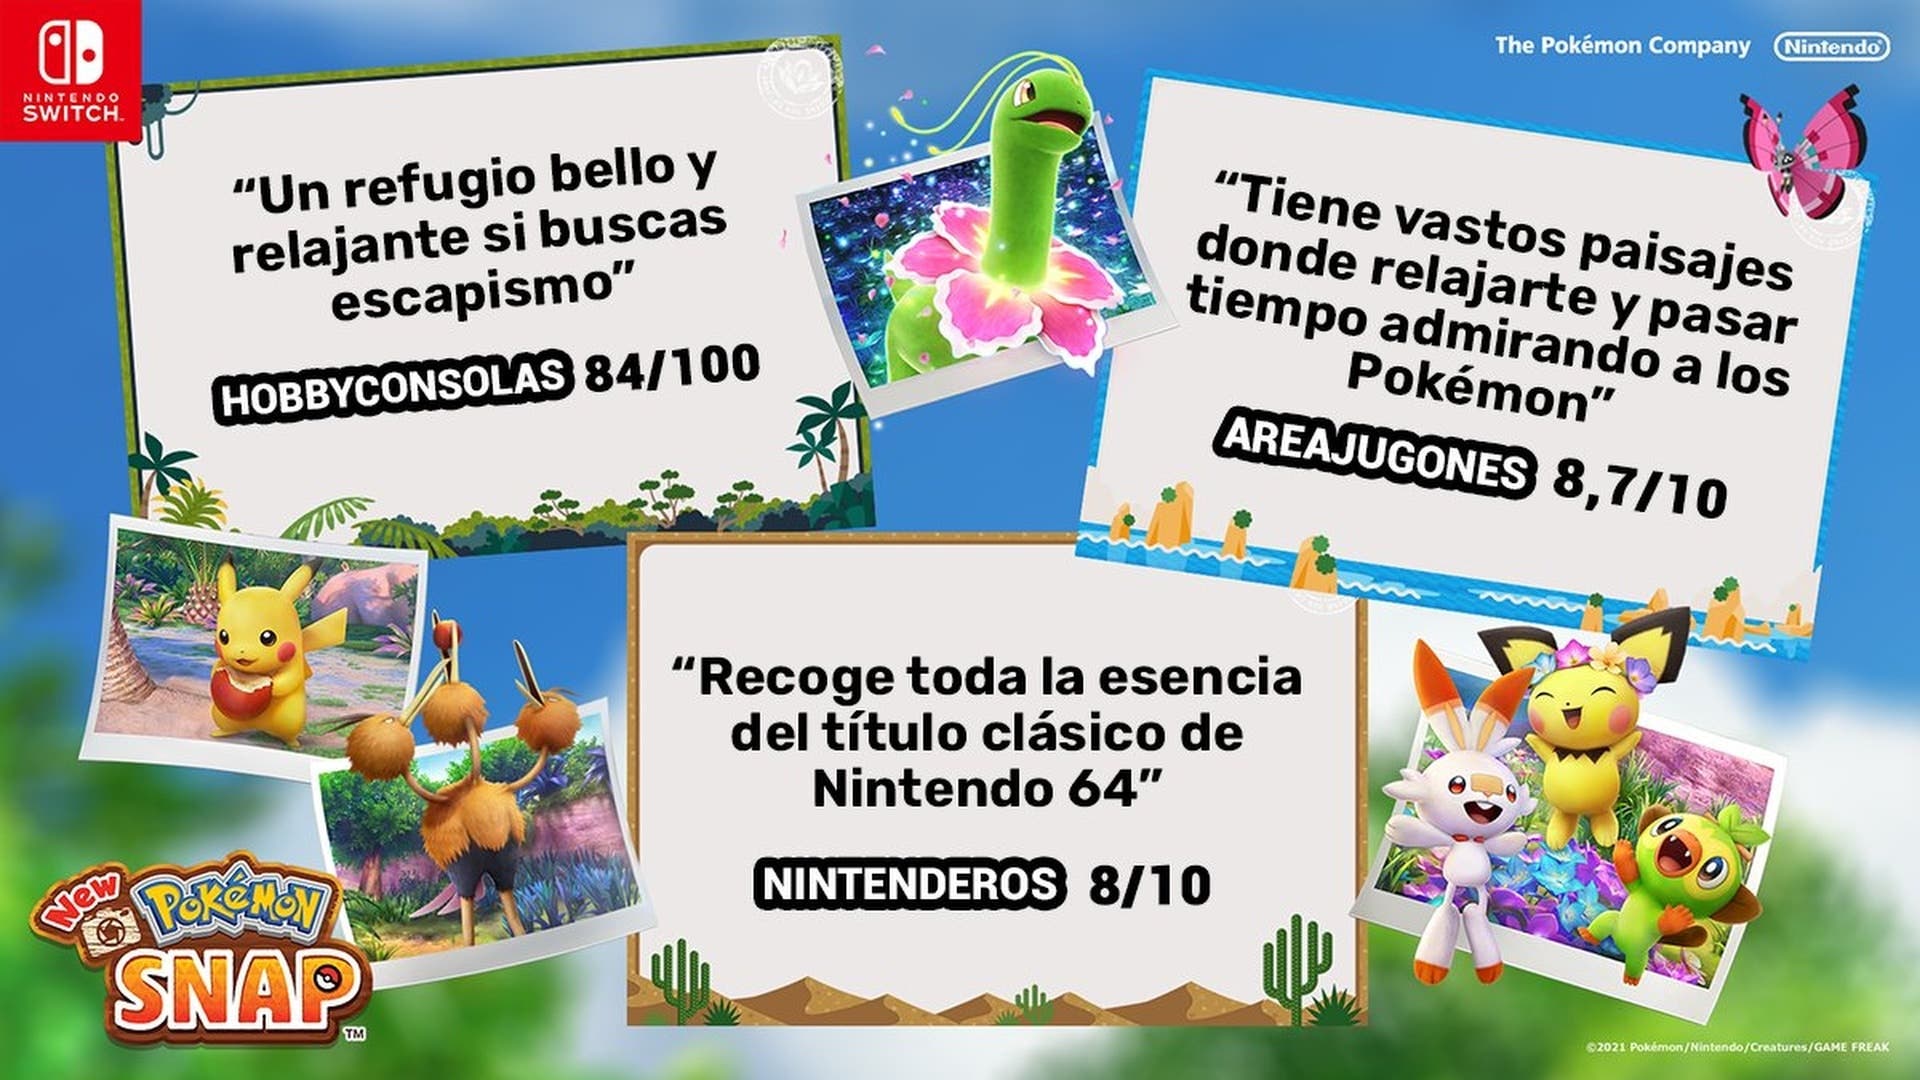 Nintendo España comparte en Twitter algunas de las reseñas de la prensa a New Pokémon Snap